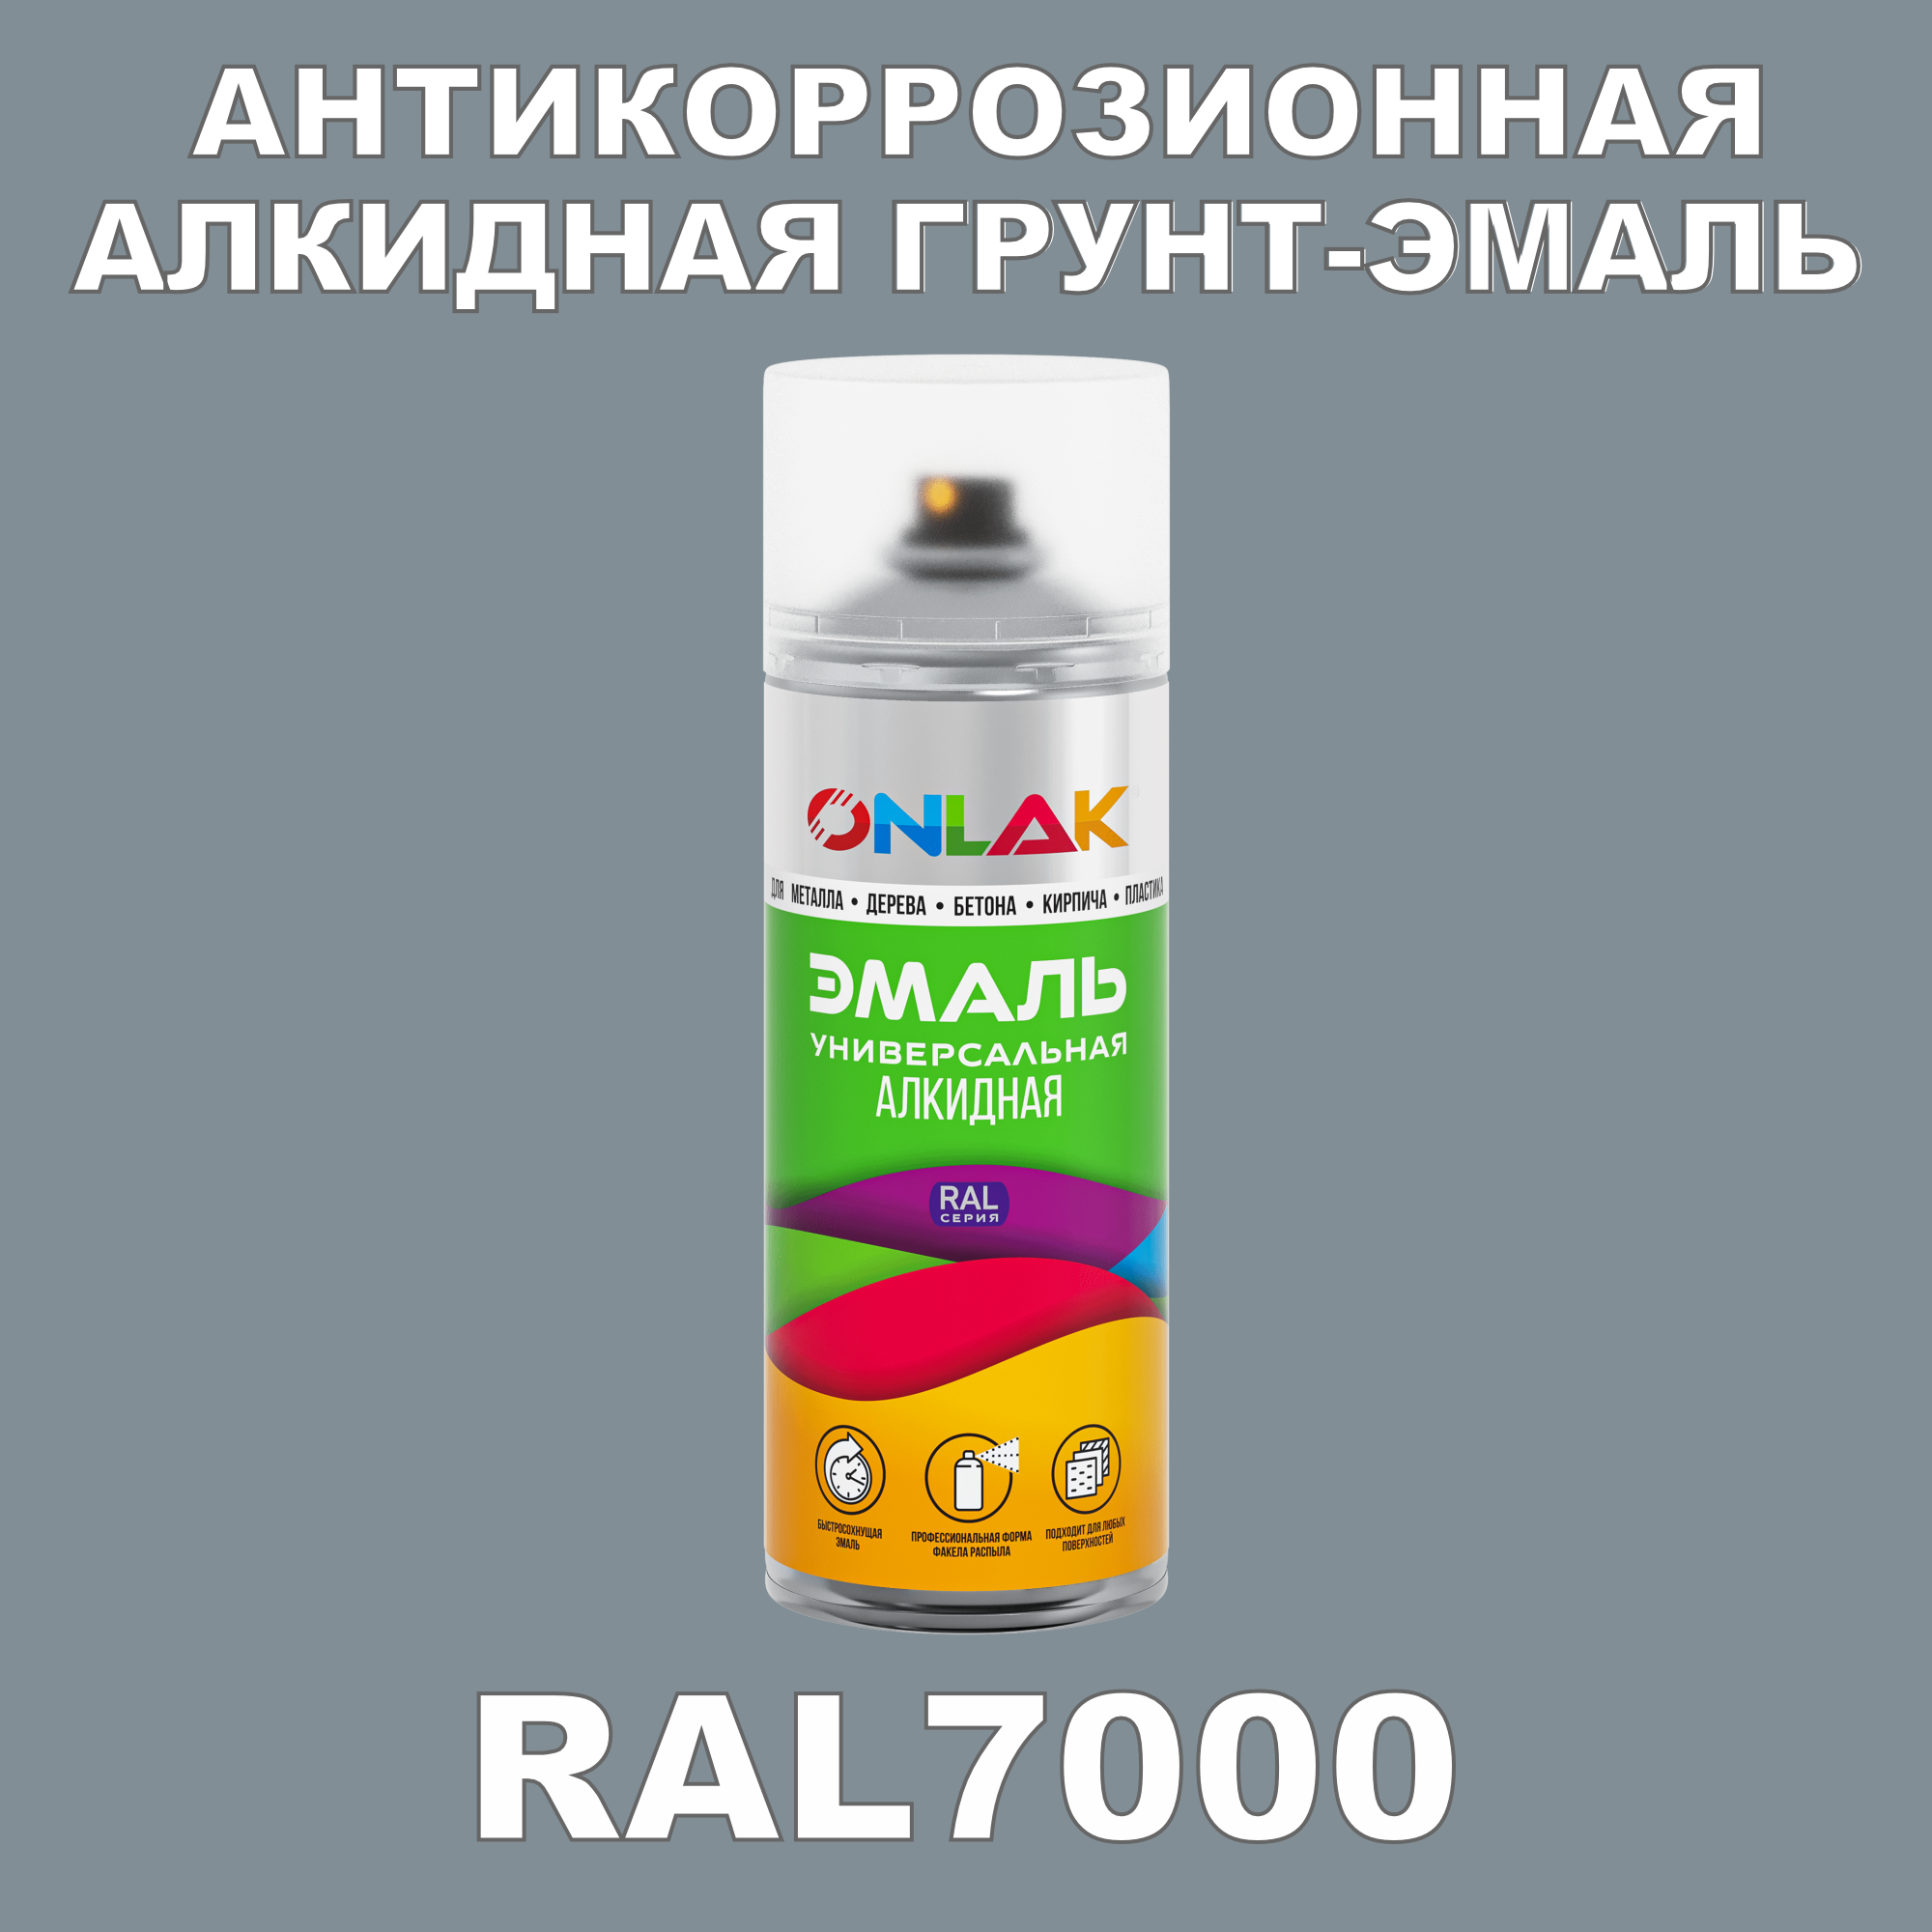 Антикоррозионная грунт-эмаль ONLAK RAL7000 полуматовая для металла и защиты от ржавчины